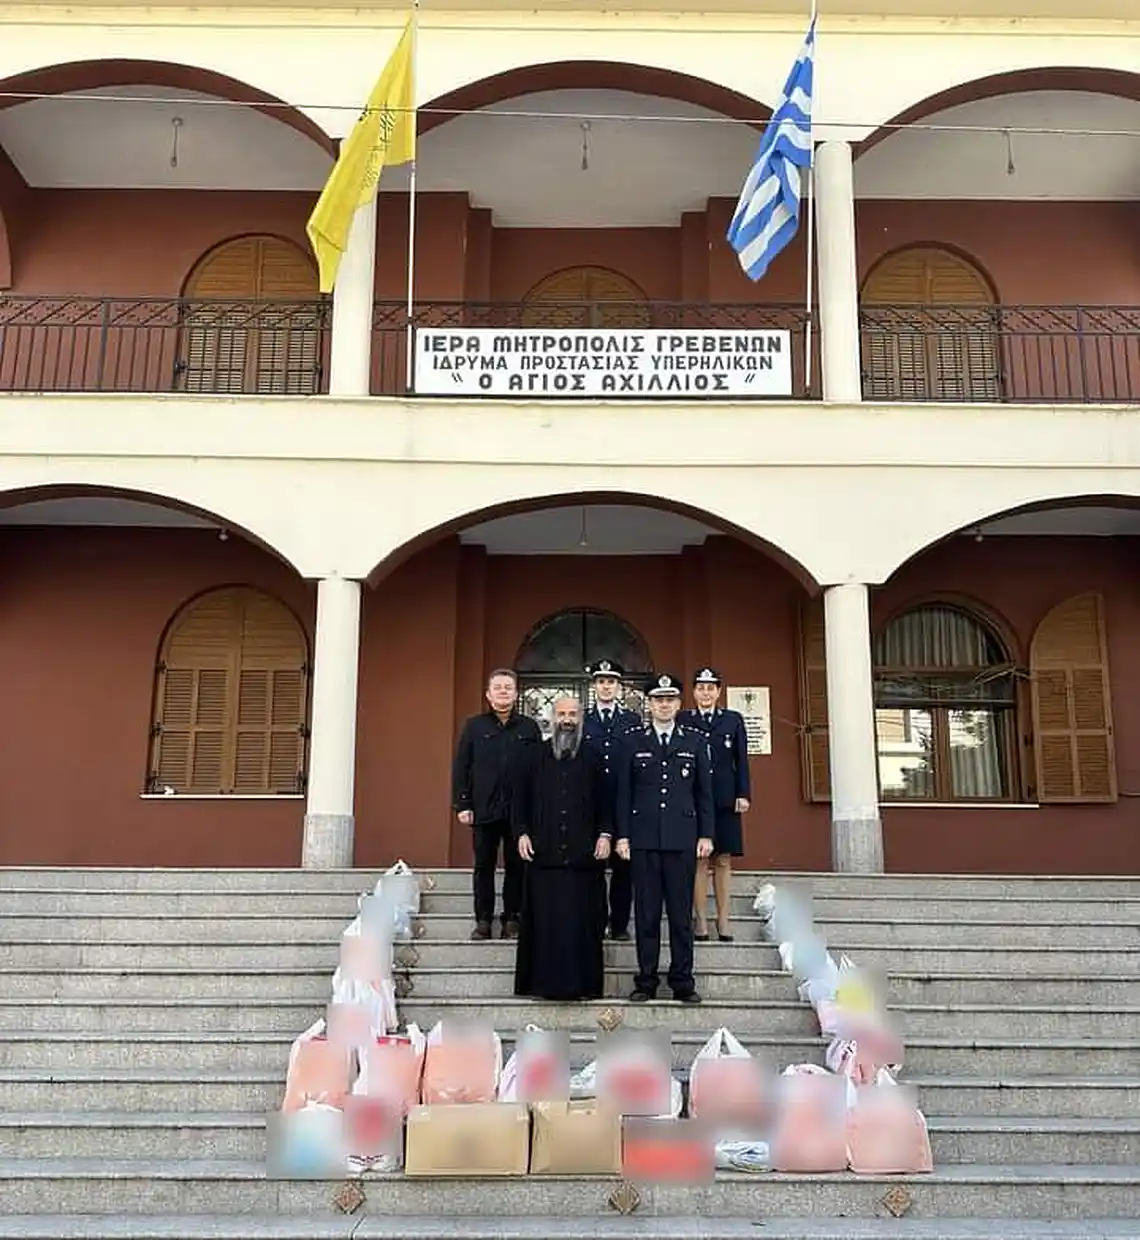 Οι αστυνομικοί της Δυτικής Μακεδονίας προσέφεραν τρόφιμα σε συμπολίτες μας